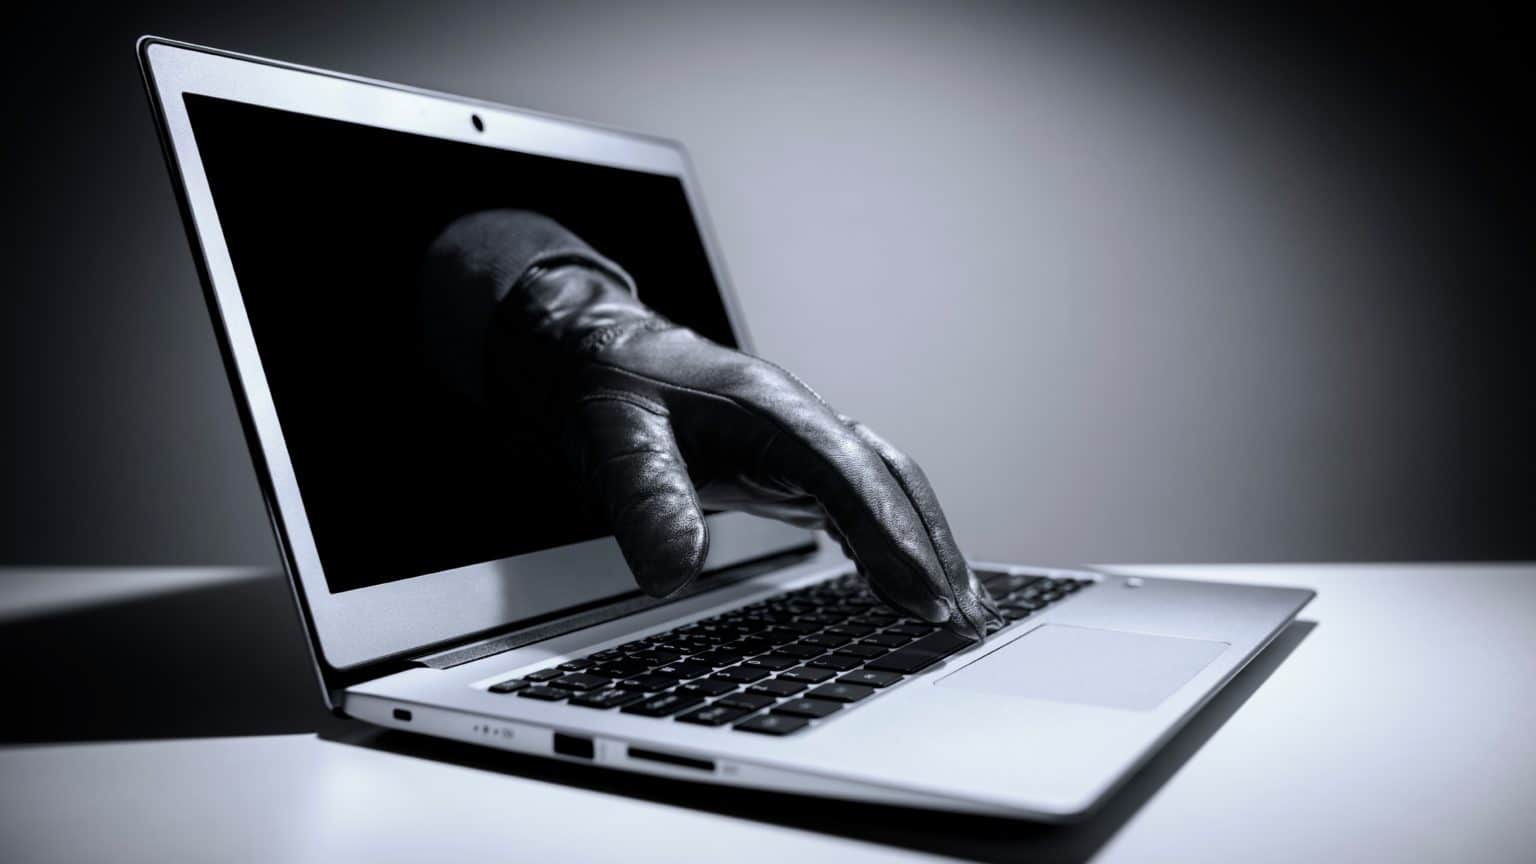 Dvije internet prijevare u Zadru: Građanke prevarene za ukupno 16 tisuća eura